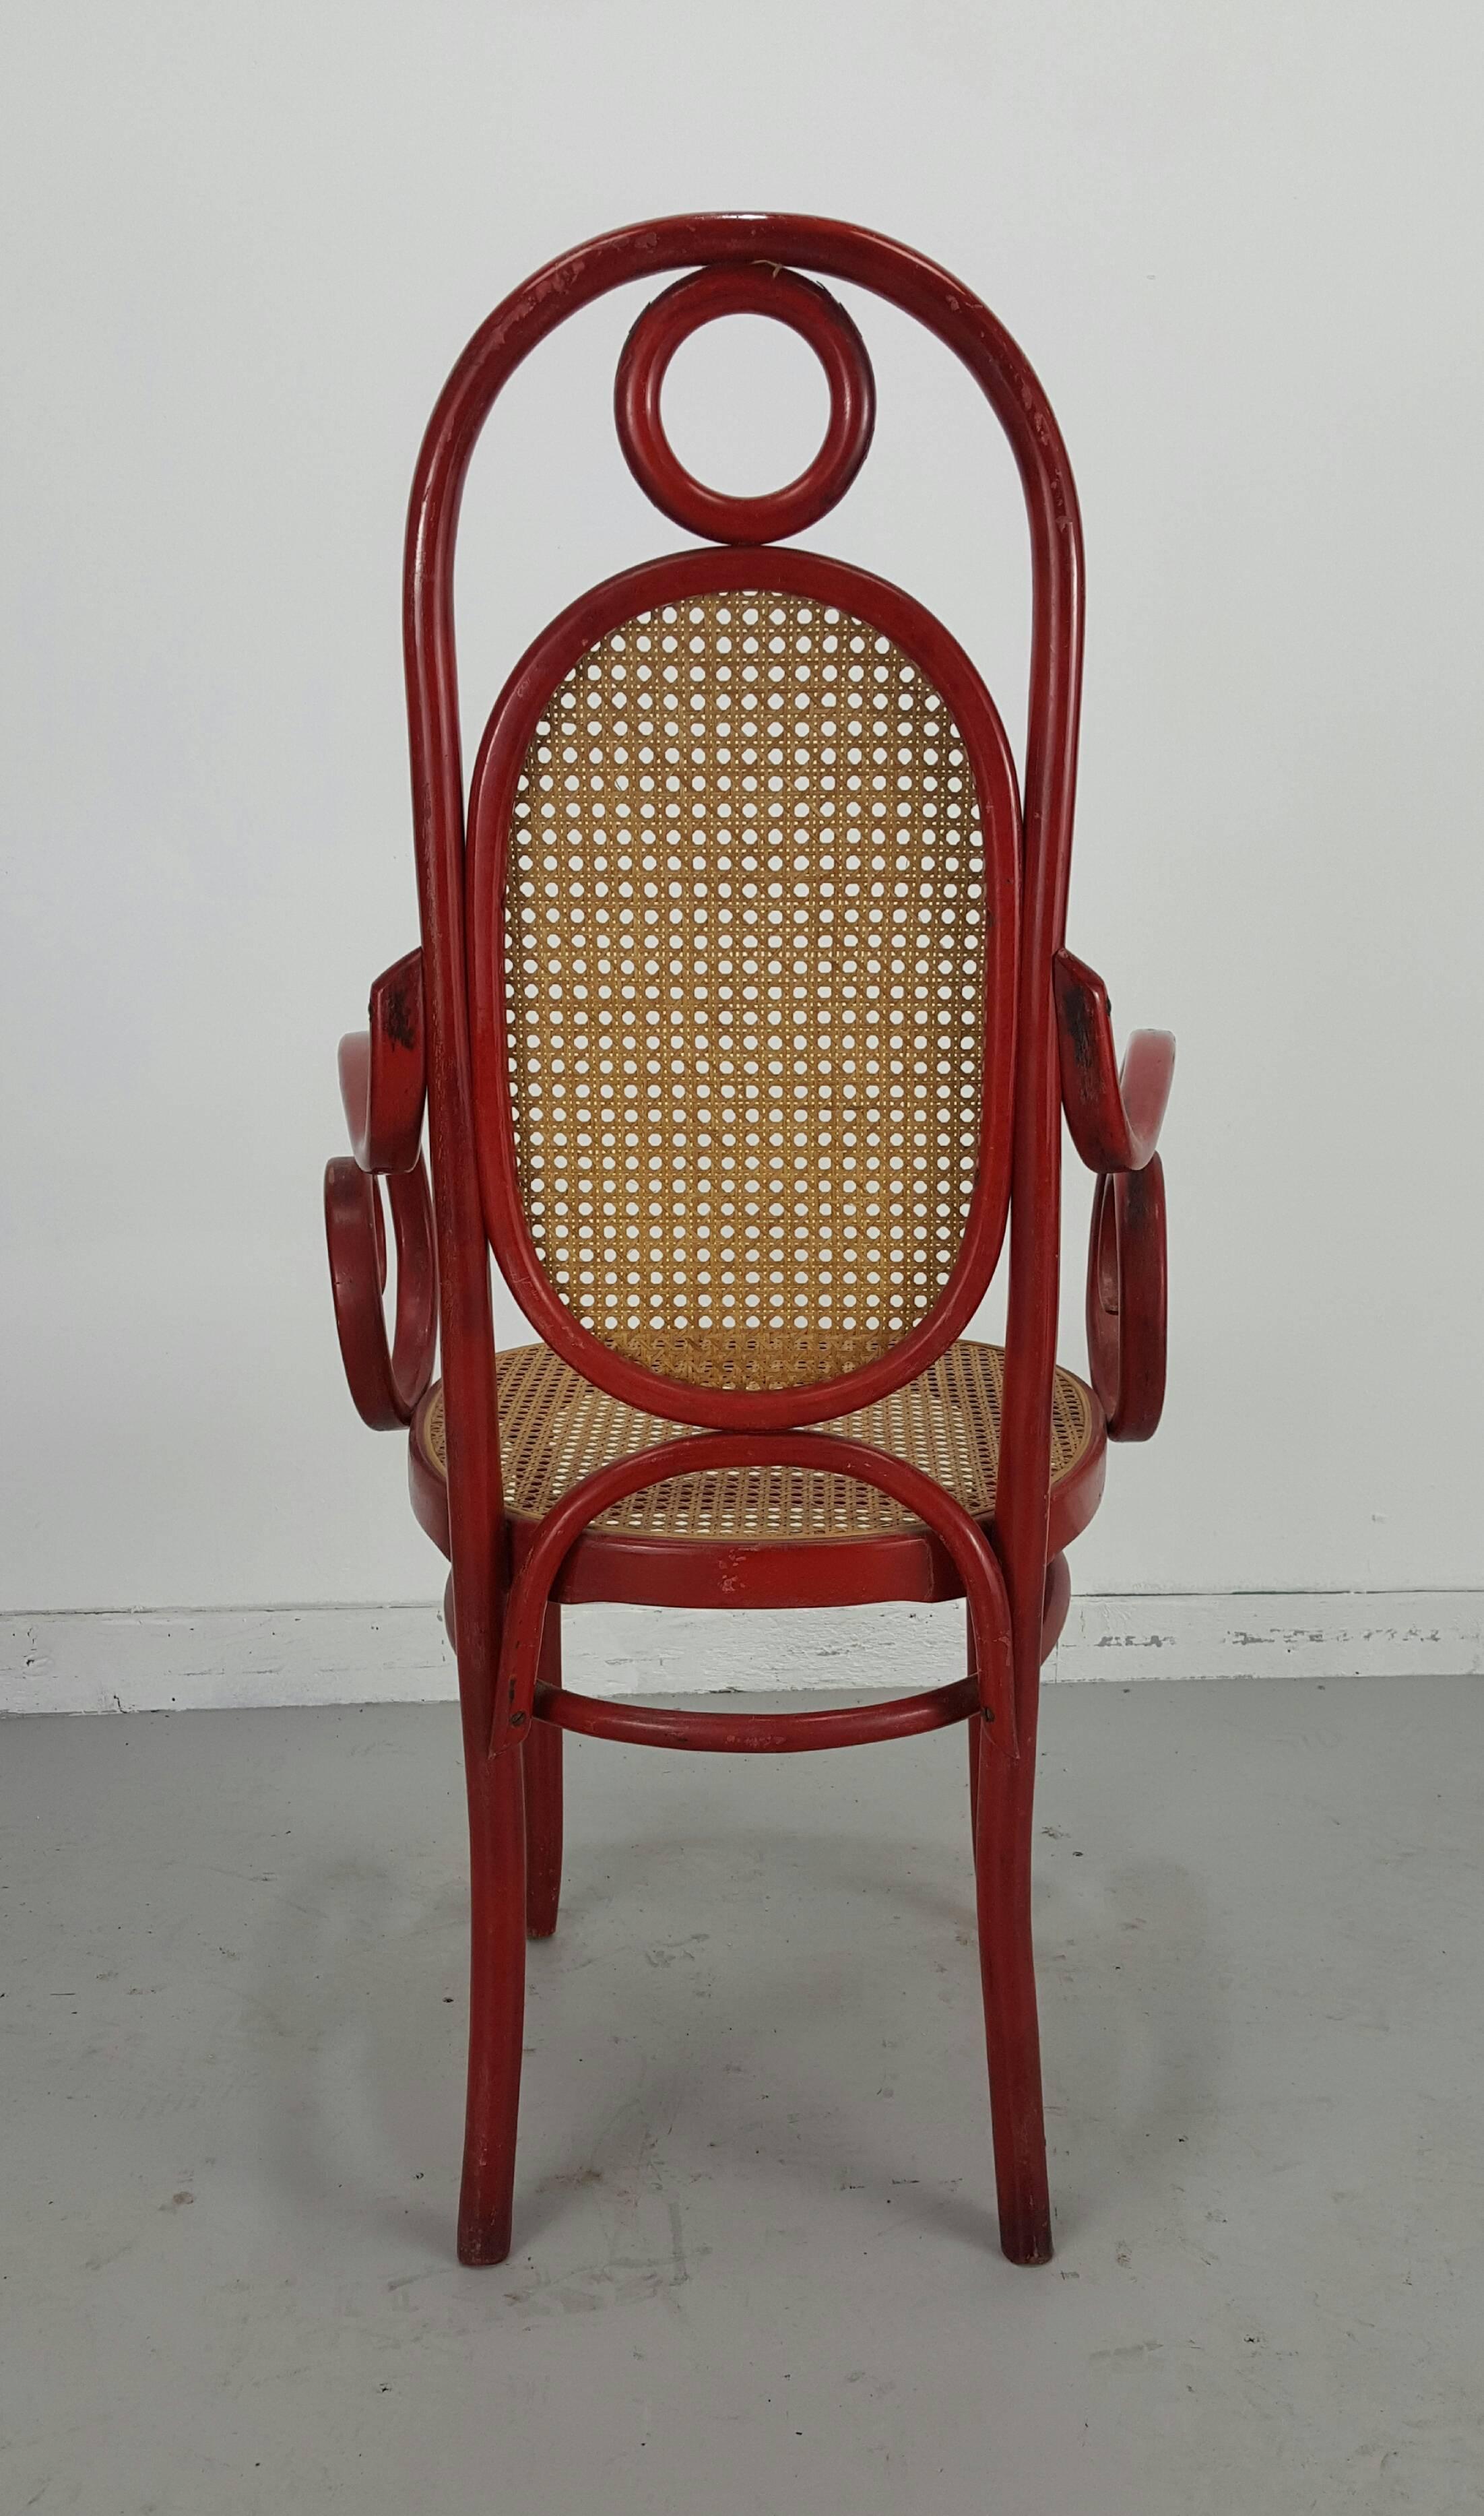 Dieser Beistellstuhl Modell 17 aus Bugholz mit Sitz und Rückenlehne aus Schilfrohr wurde von Michael Thonet in den 1860er Jahren für sein eigenes Unternehmen entworfen. Dieses Exemplar wurde in den 1970er Jahren hergestellt und befindet sich in